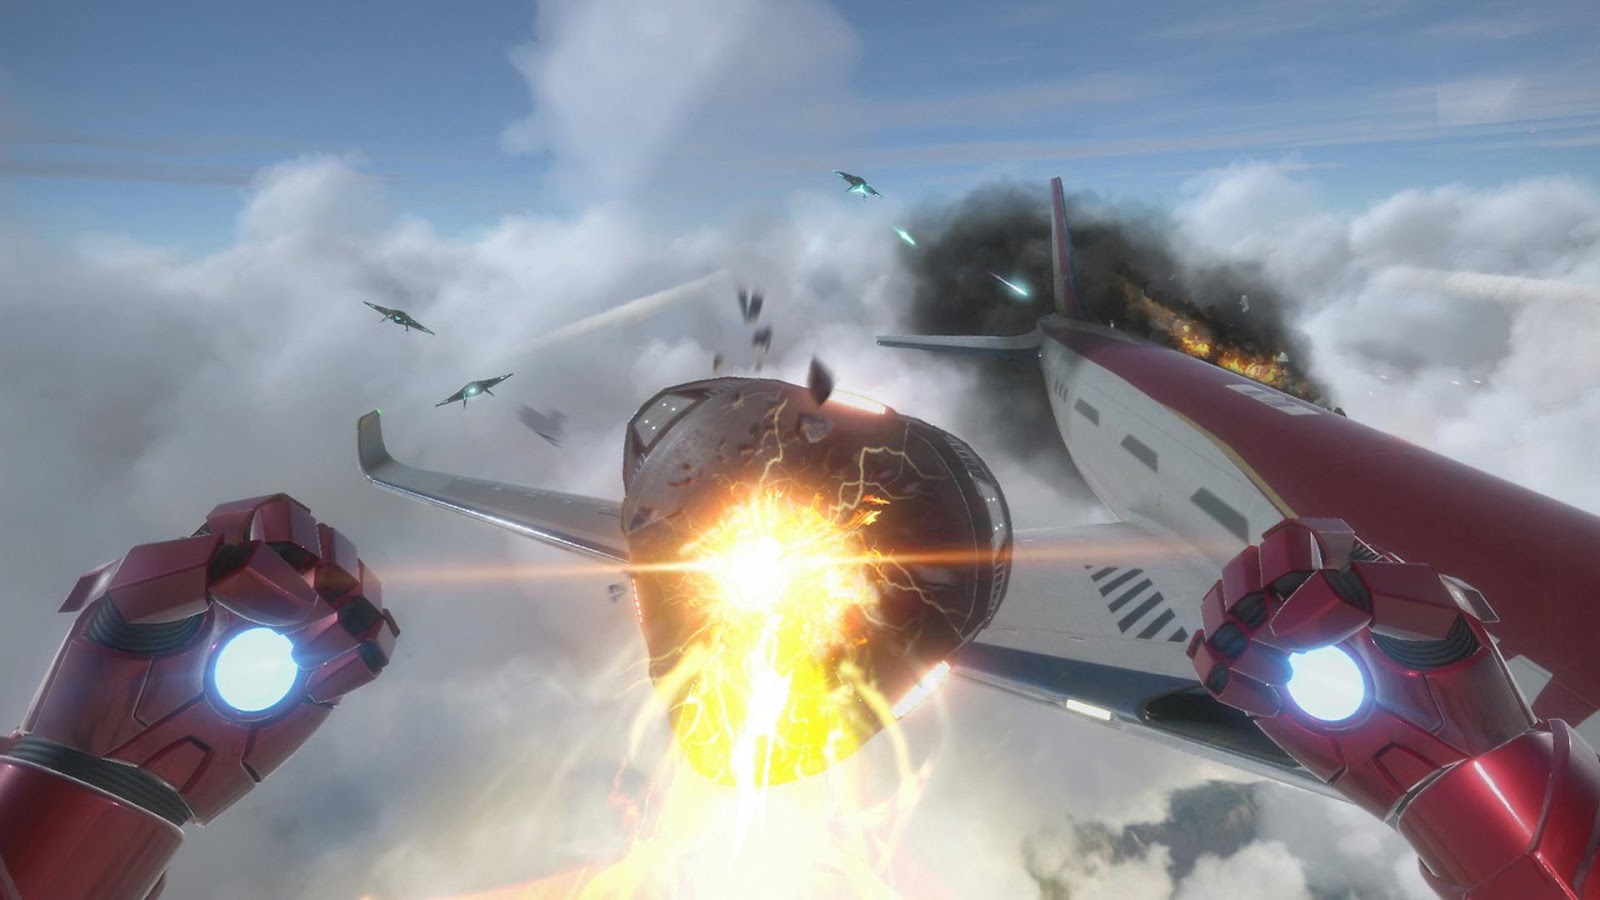 Najbolje PS VR igre: Iron Man se vidi kako se bori protiv nečega iznad aviona